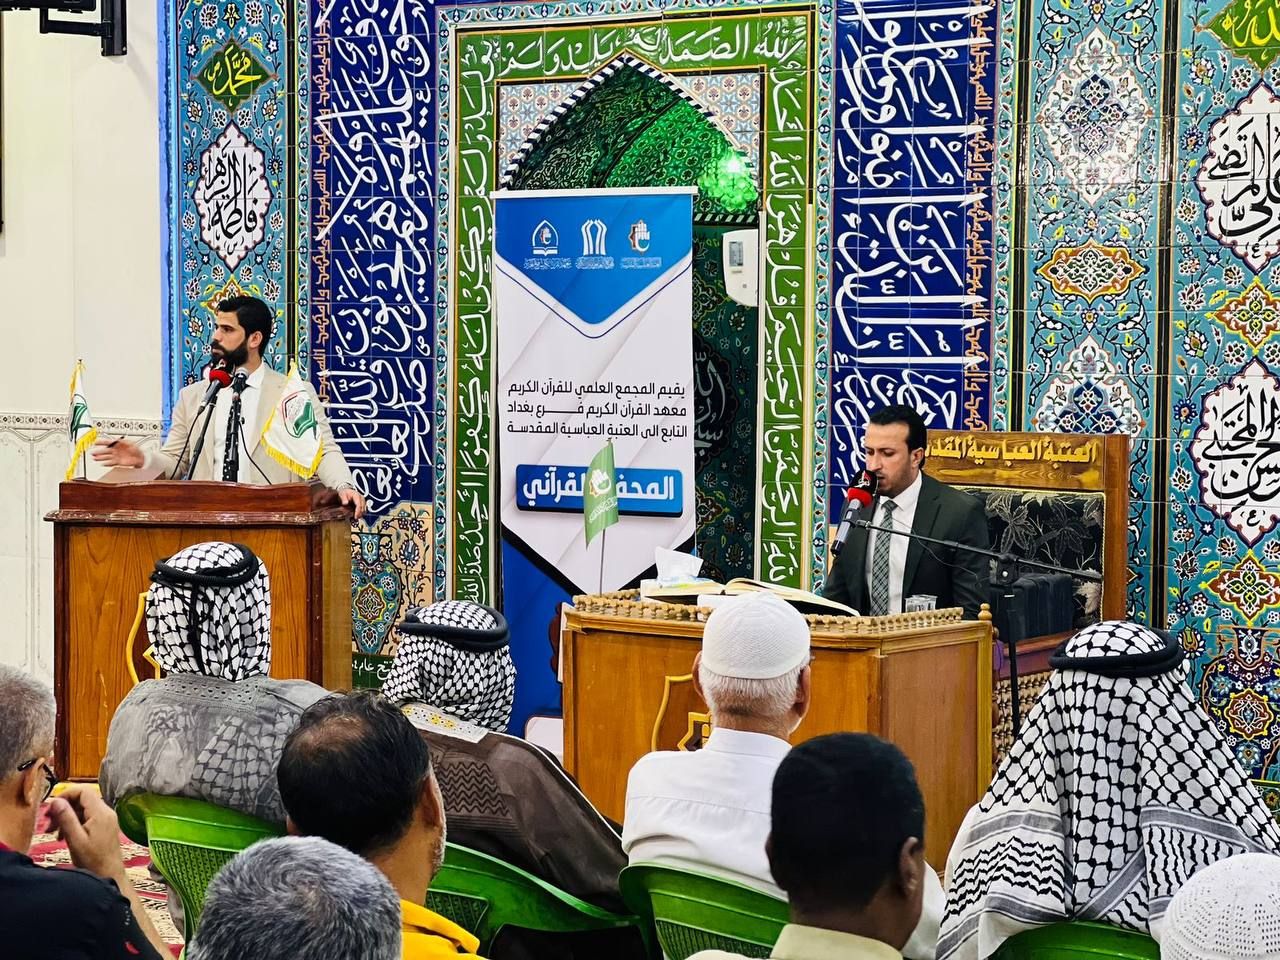 المَجمَع العلميّ والمركز الوطني لعلوم القرآن يقيمان محفلاً قرآنياً في بغداد